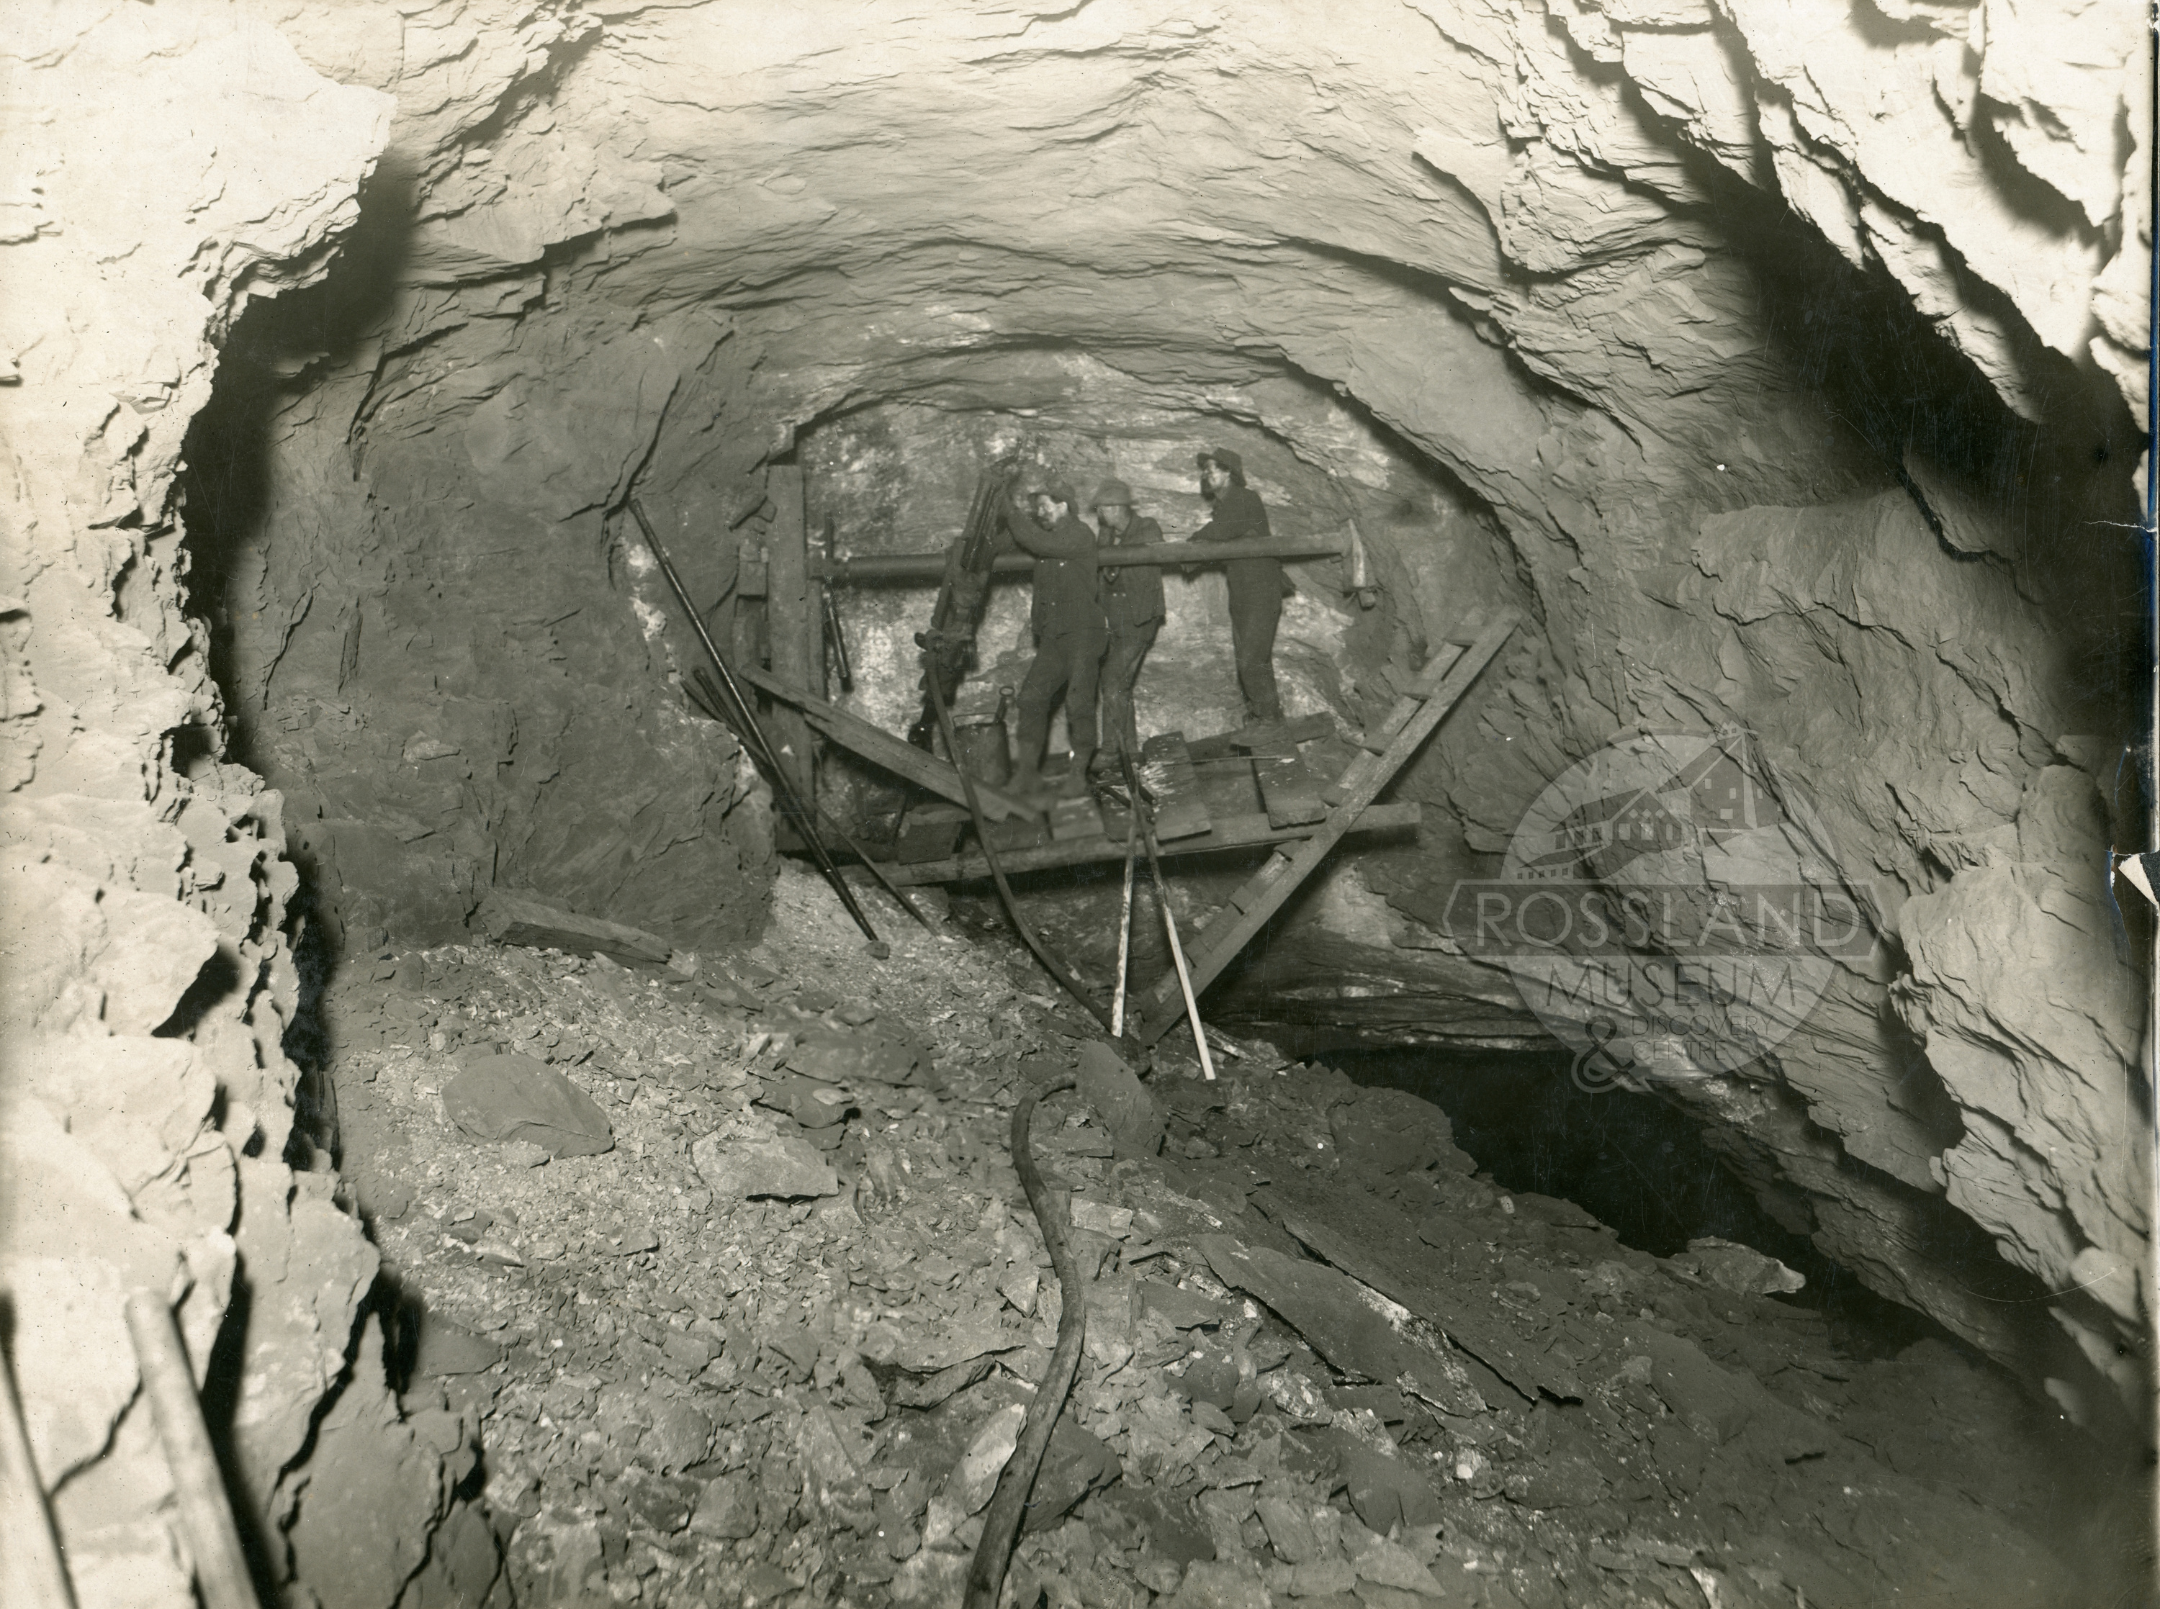 Photo 2304.0064: Drilling in Centre Star Mine with a diamond drill, circa 1907